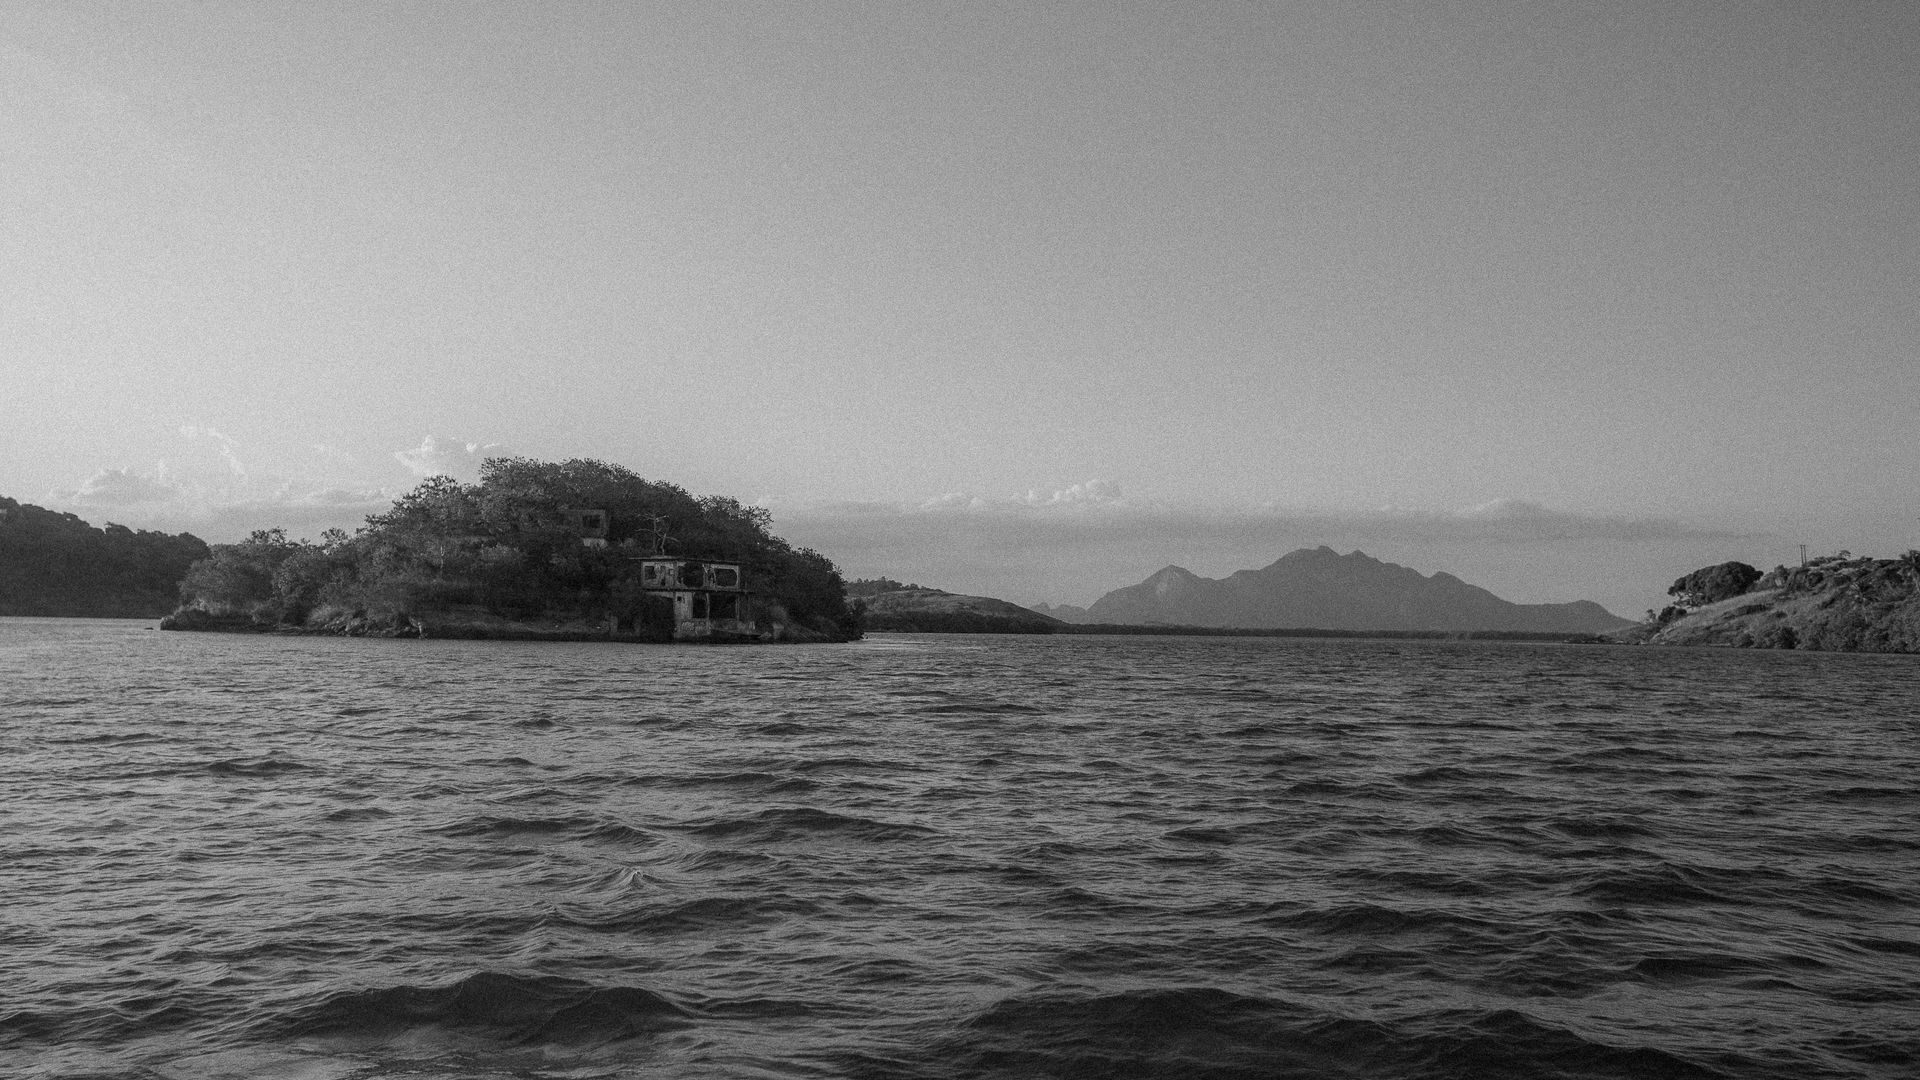 Ensaio de aproximação - proposta fotográfica de Barbara Bragatto, com imagem da Ilha da Pólvora, na Baía de Vitória